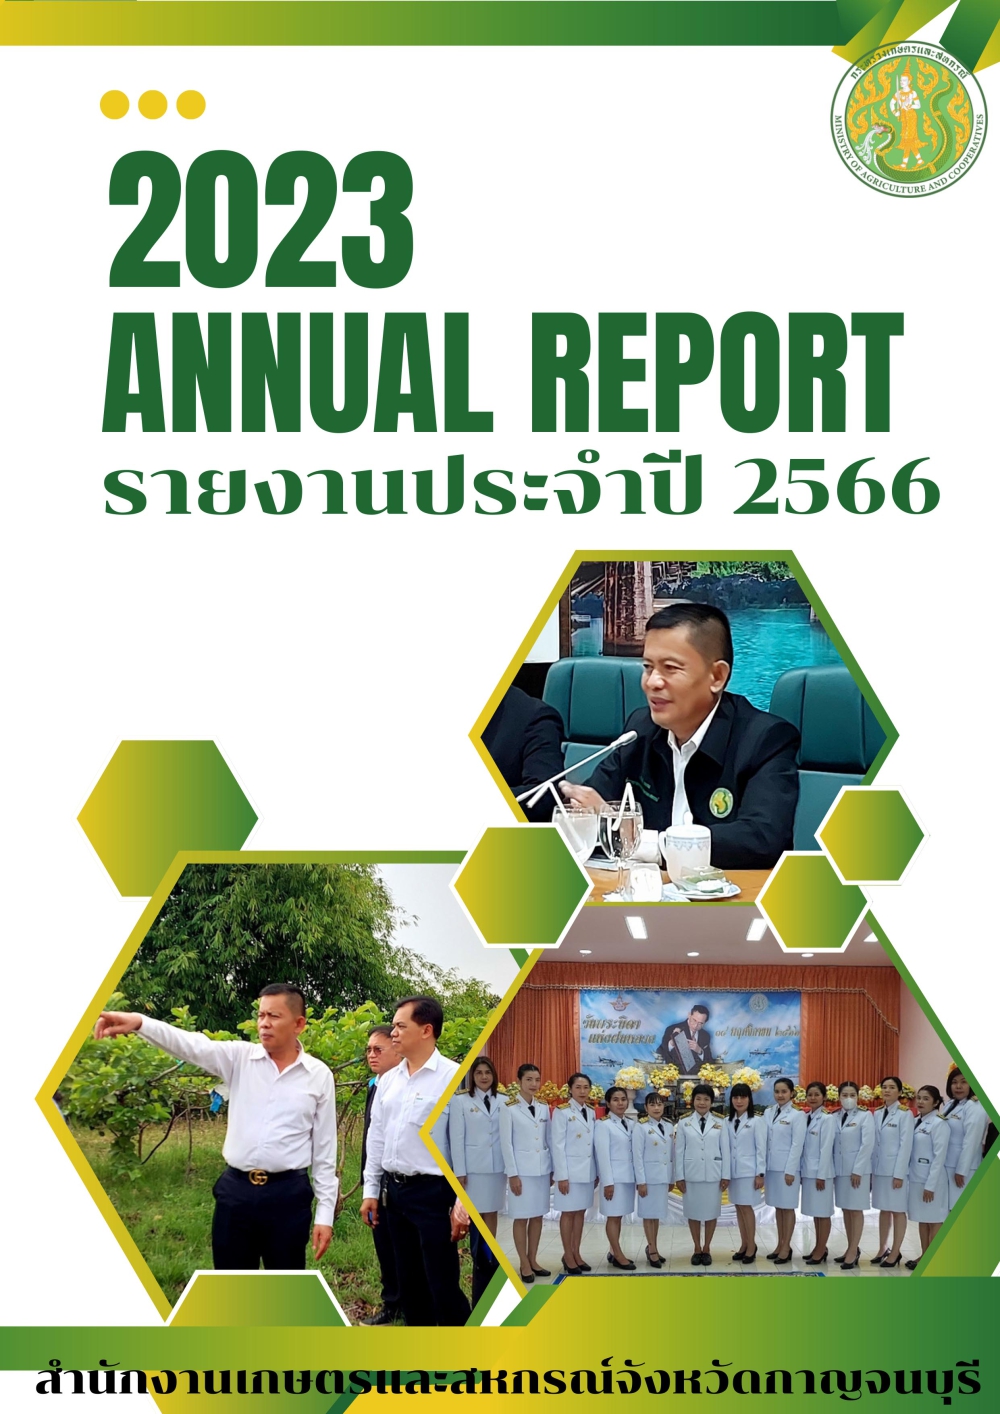 รายงานประจำปี2566ของสำนักงานเกษตรและสหกรณ์จังหวัดกาญจนบุรี